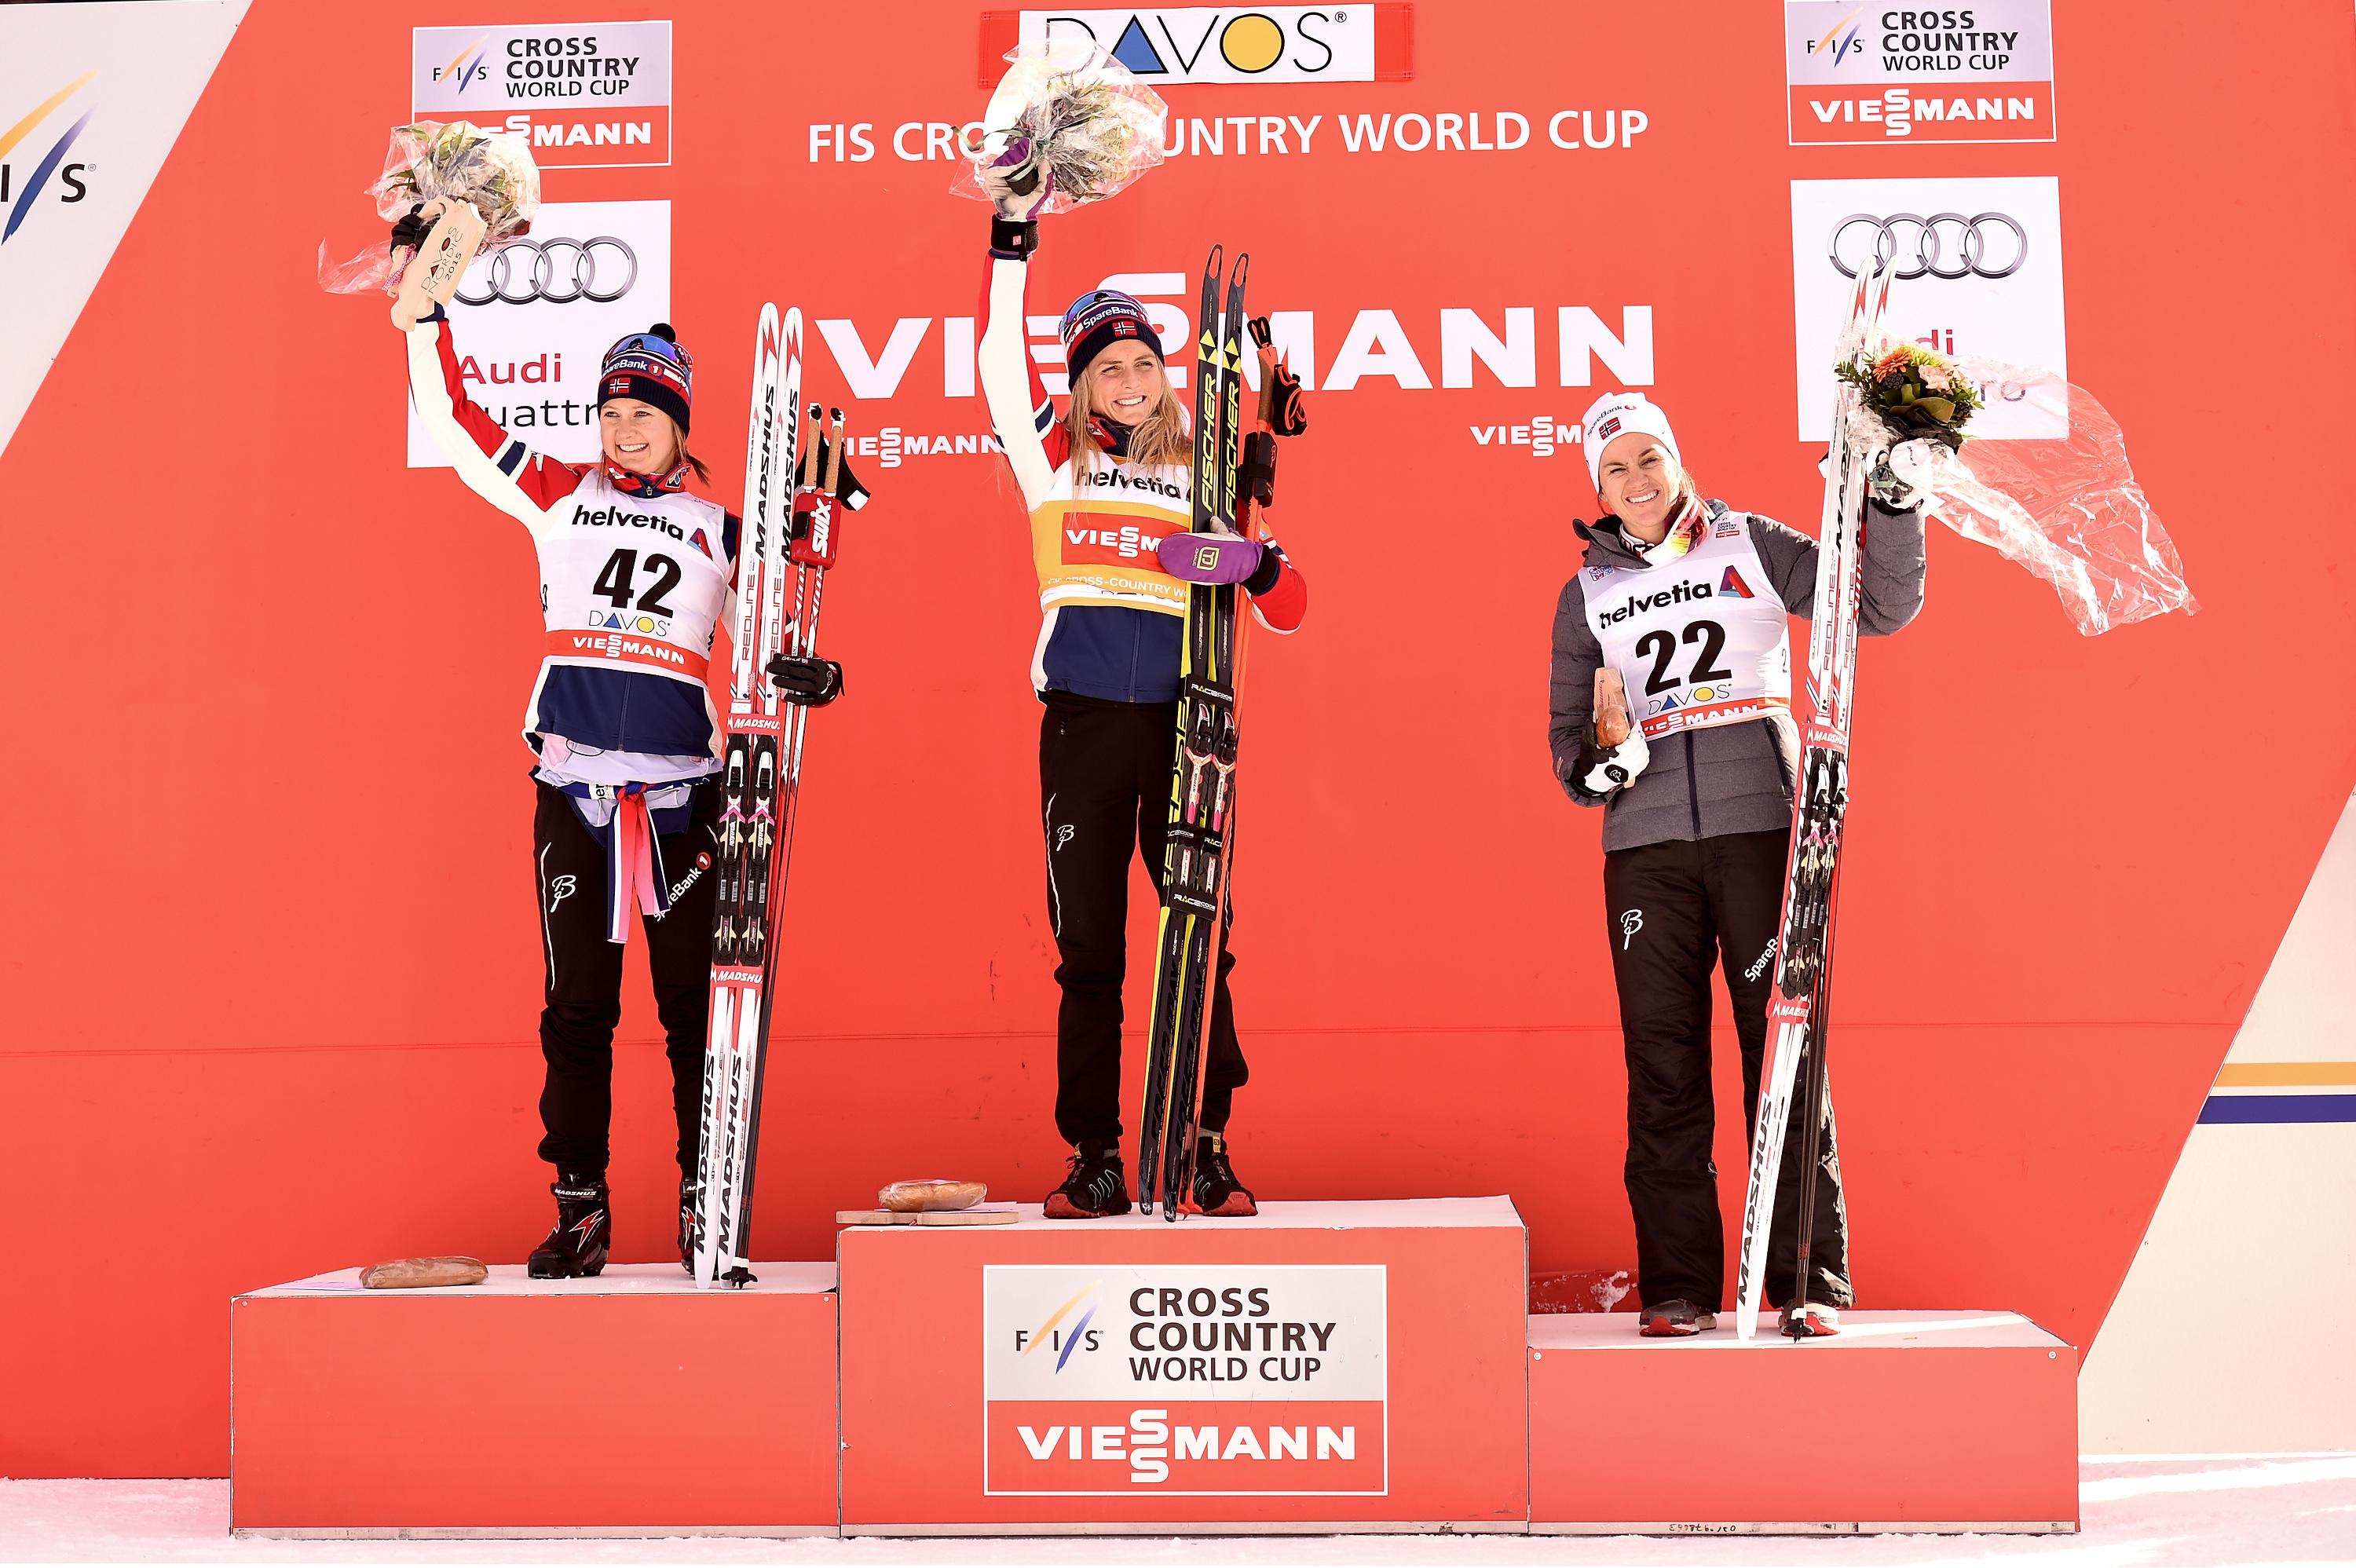 
Suveräna Therese Johaug (i mitten) vann på lördagen sin femte raka världscuptävling i längdskidåkning. Ingvild Flugstad Östberg (till vänster) och Heidi Weng (till höger) tvåa respektive trea i tävlingen i schweiziska Davos. (Foto: Vianney Thibaut/Agence Zoom/Getty Images)